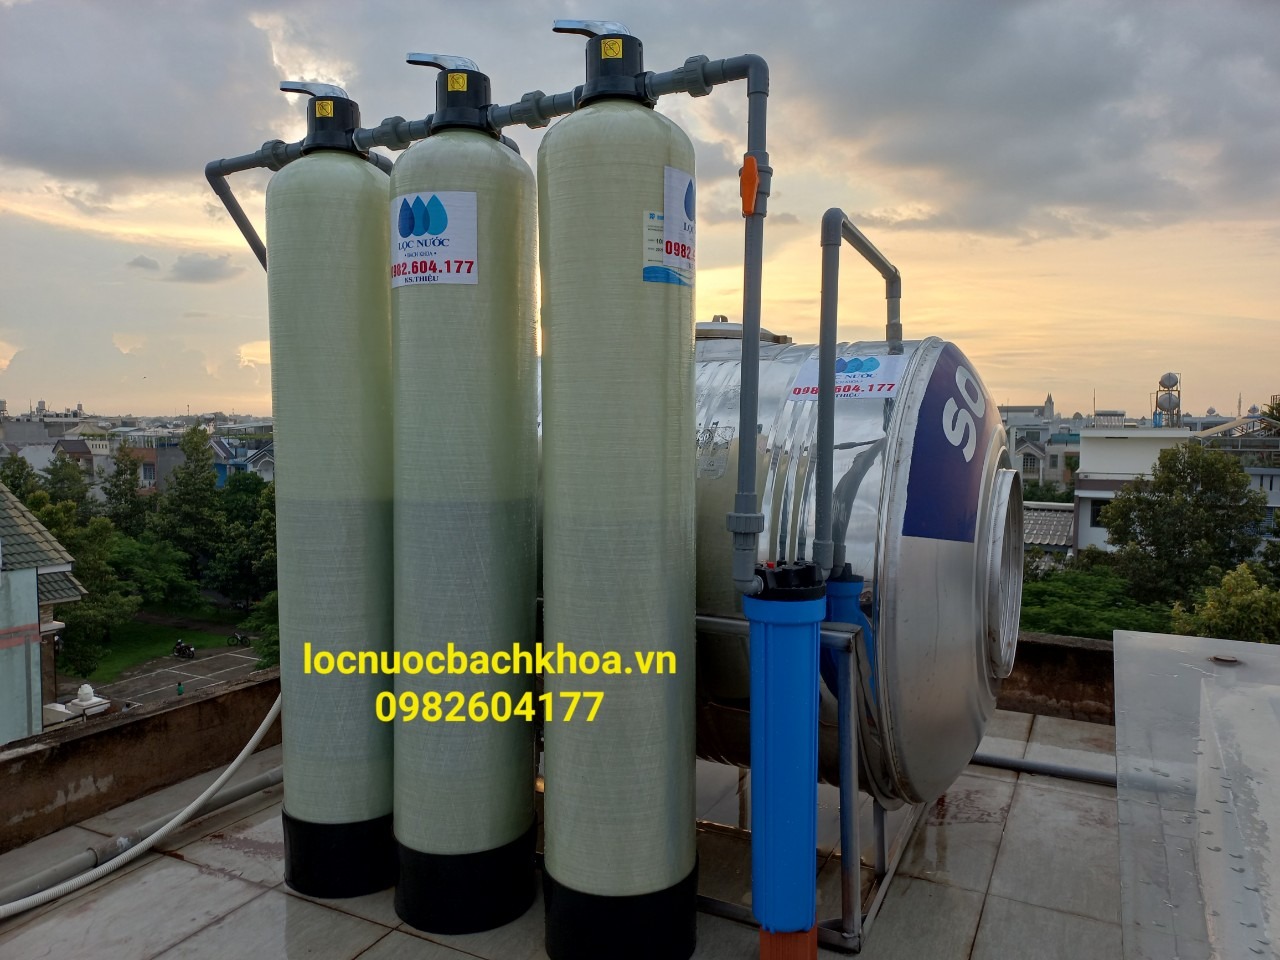 Lắp đặt bộ lọc nước bằng composite cho nhà anh Vinh - Quận Tân Phú